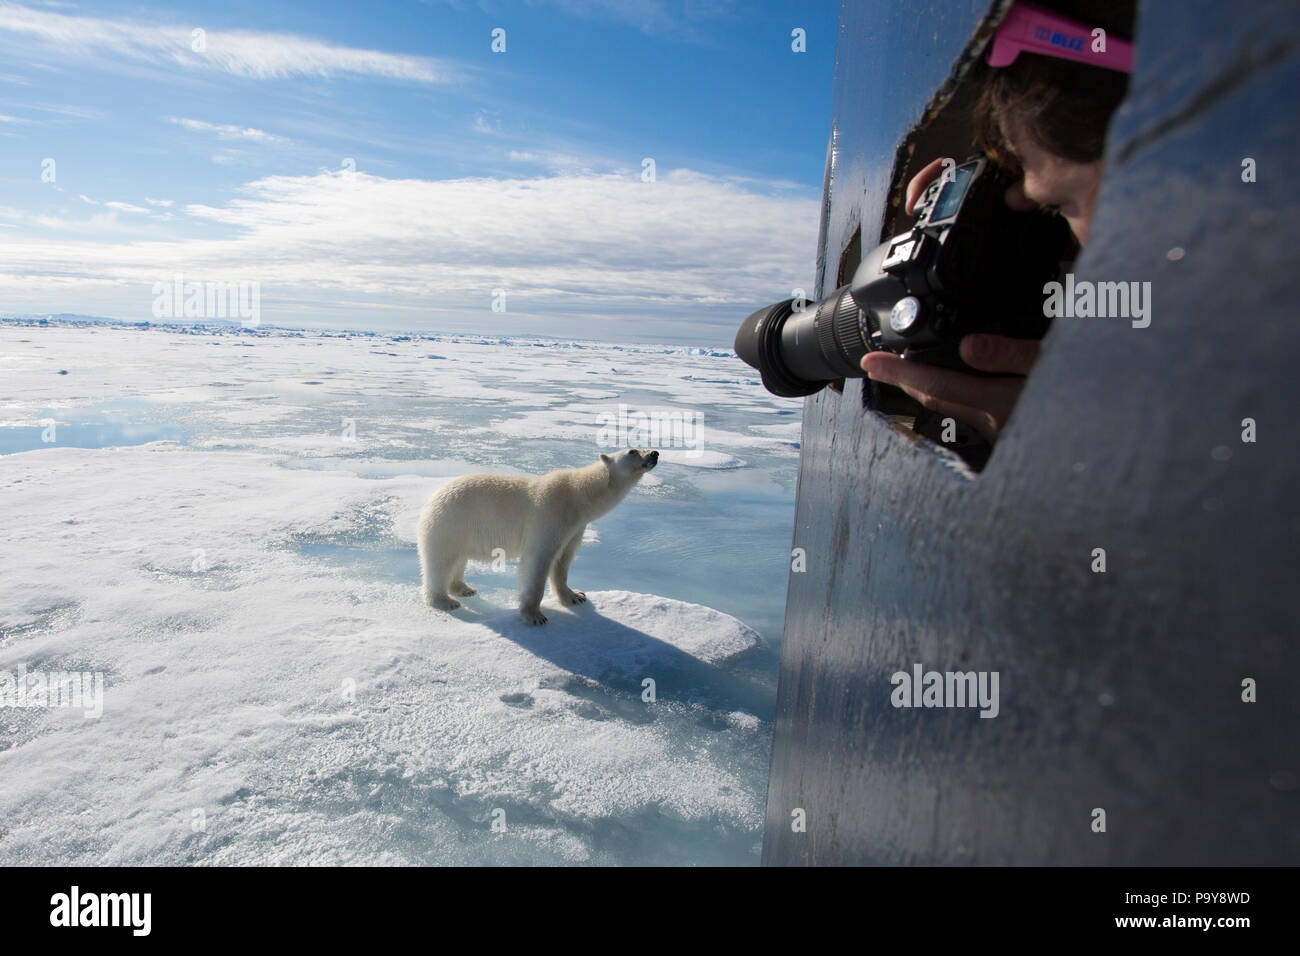 Un orso polare si avvicina ad una nave turistica nell'Oceano Artico, fotografata da una donna a distanza ravvicinata. Foto Stock